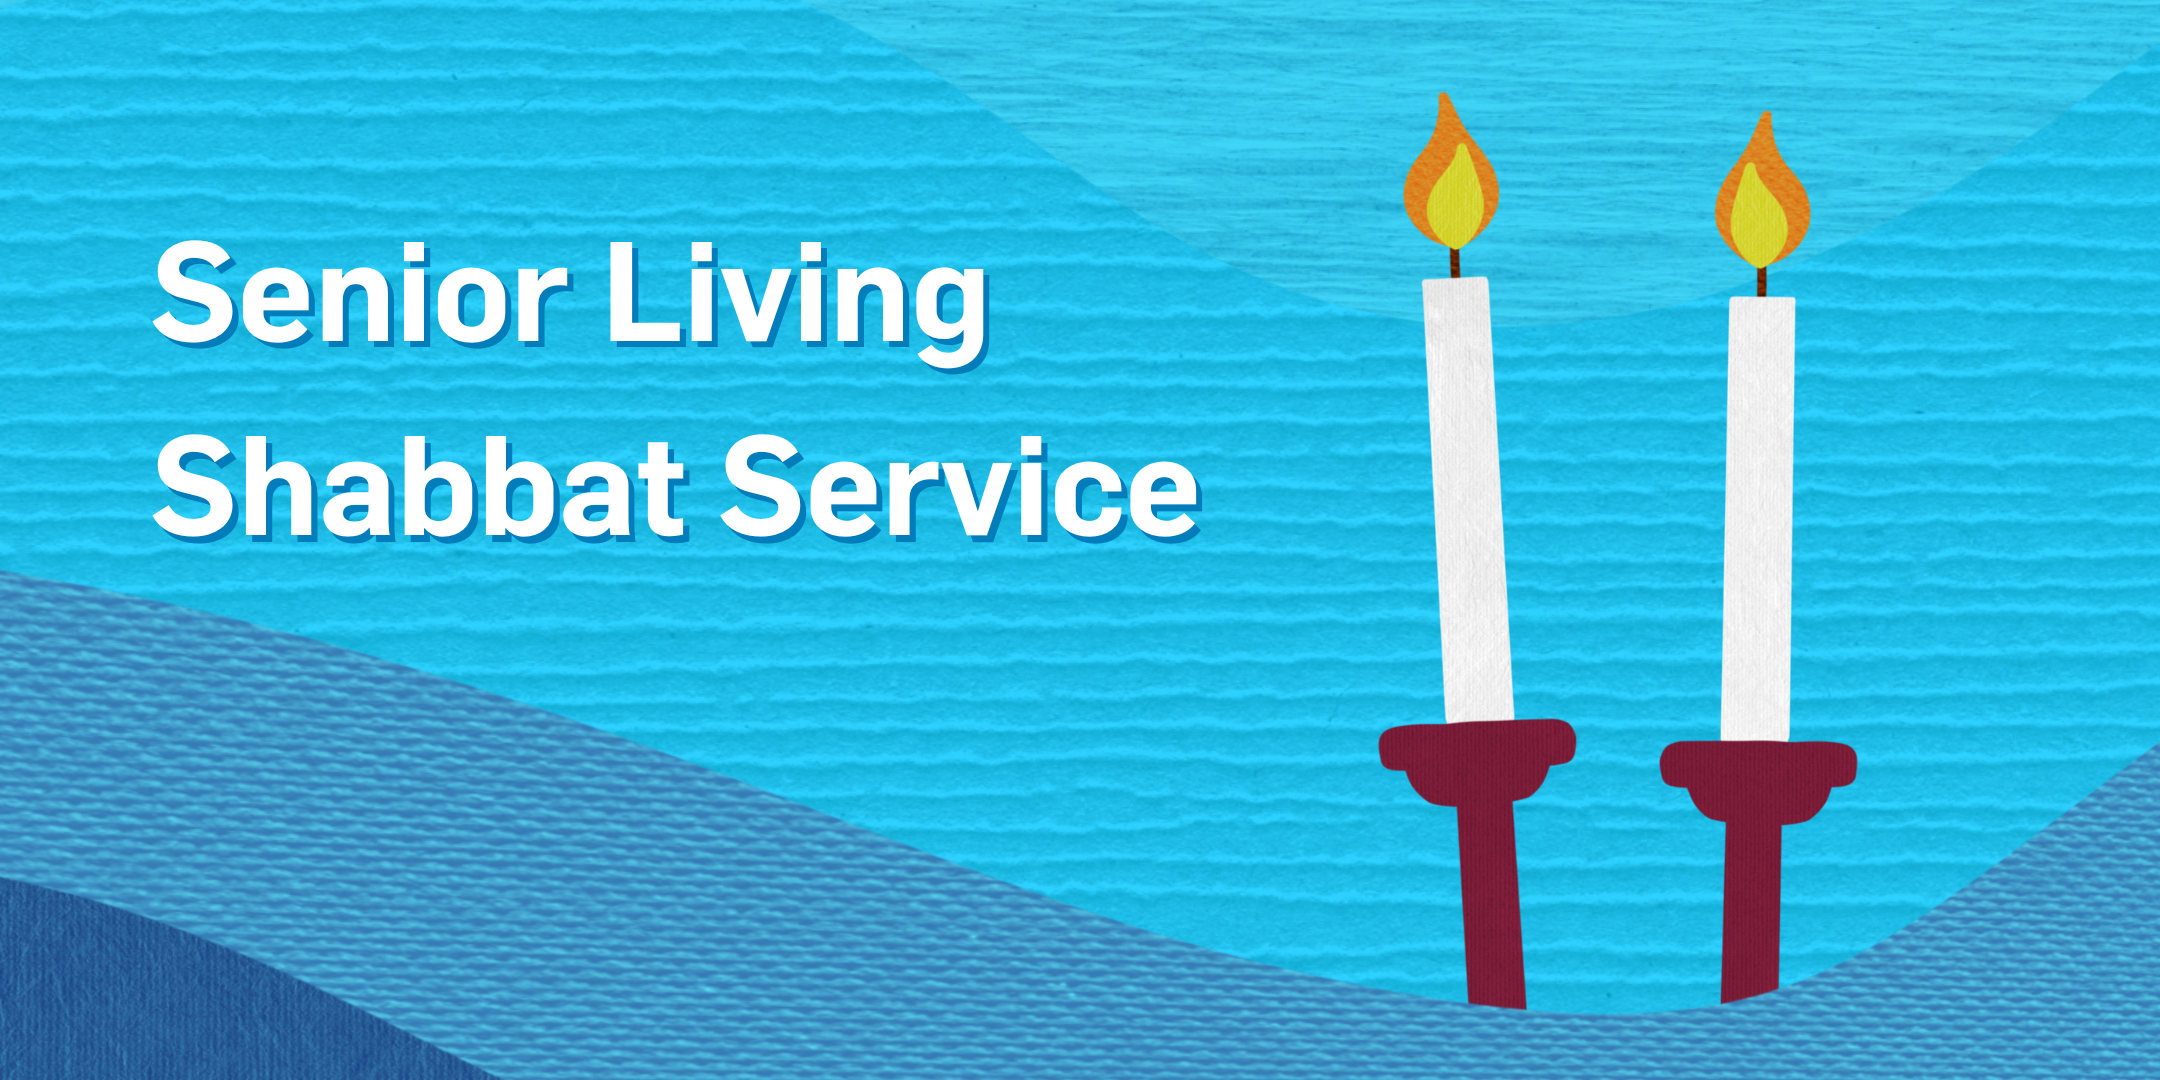 Senior Living Shabbat Service